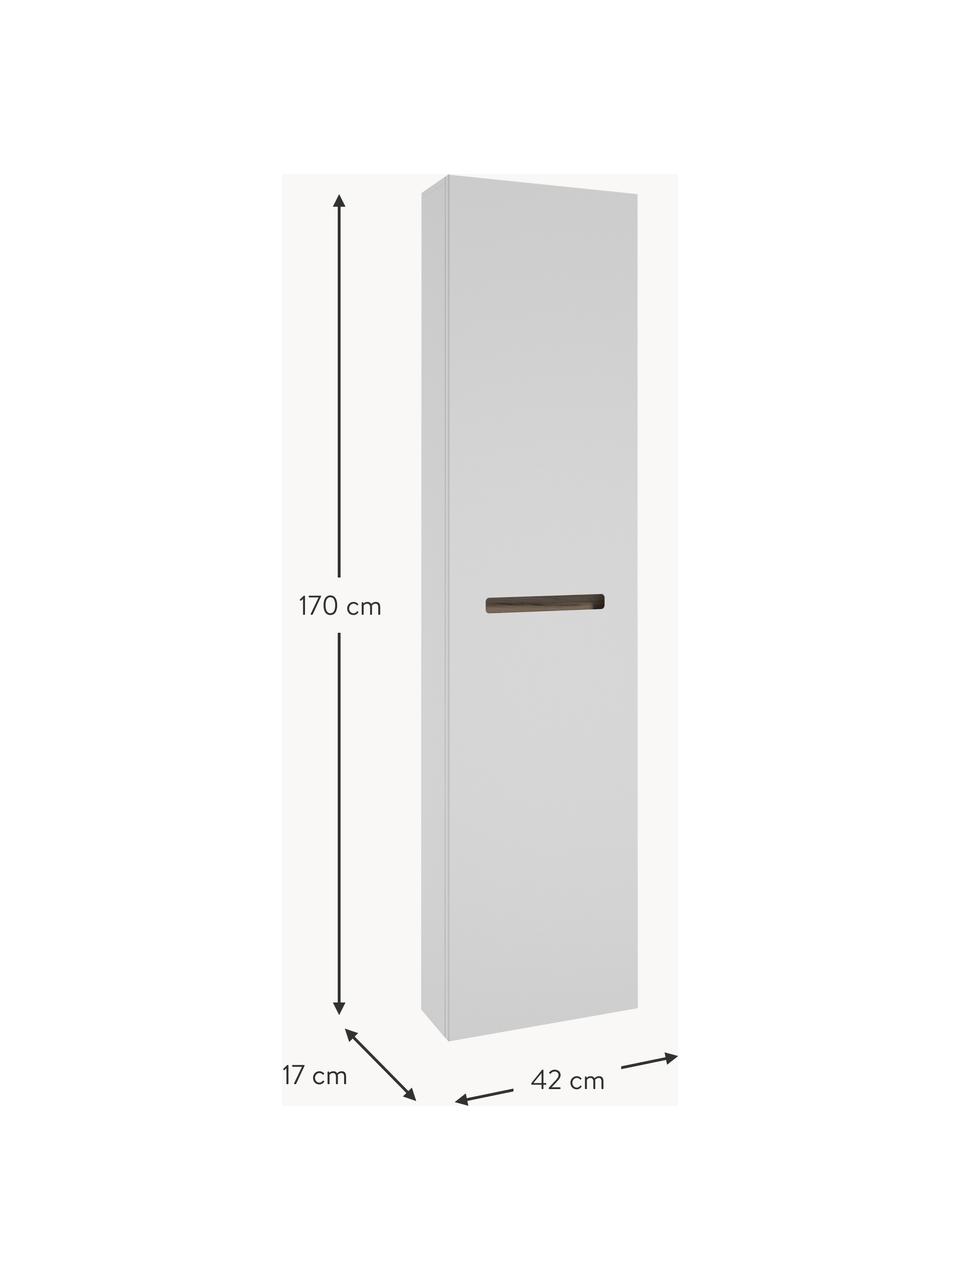 Bad-Hochschrank Senso, B 42 cm, Spanplatte,MDF,4 Glaseinlegeböden, Holz, weiß lackiert, B 42 x H 170 cm